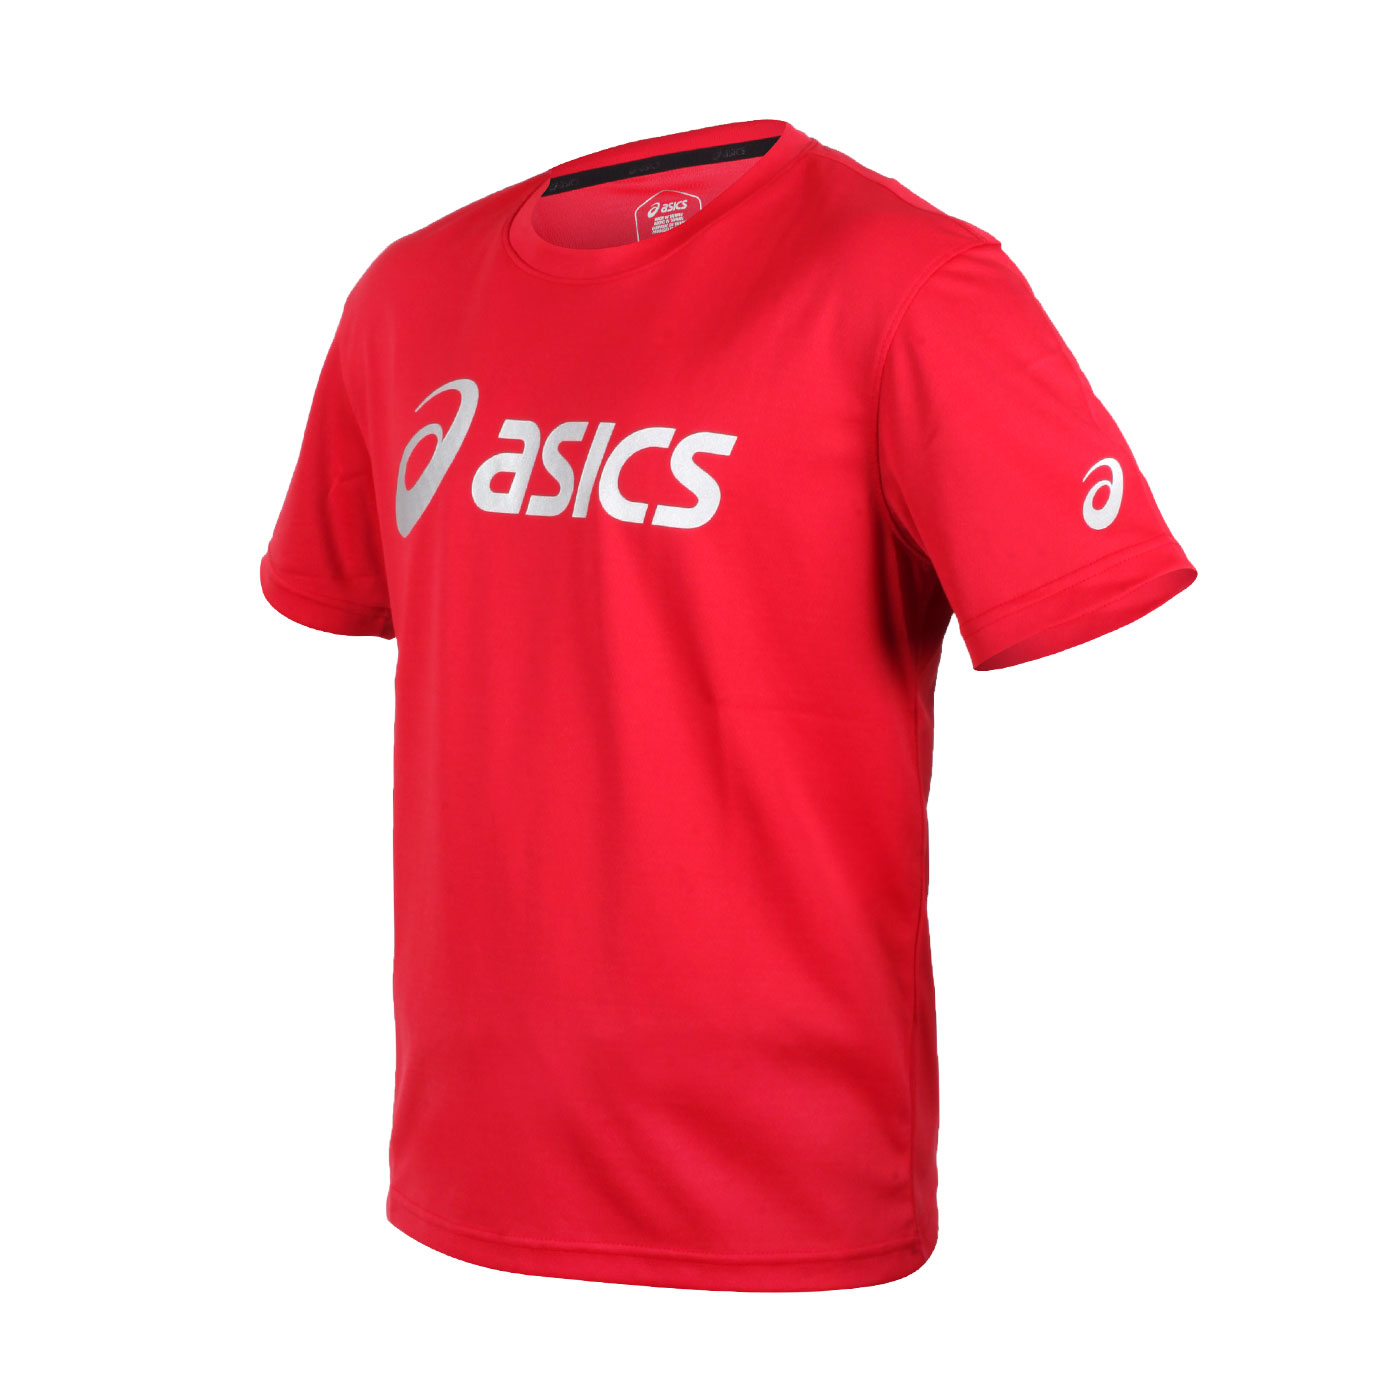 ASICS 男款短袖T恤 K31415-23A - 紅銀